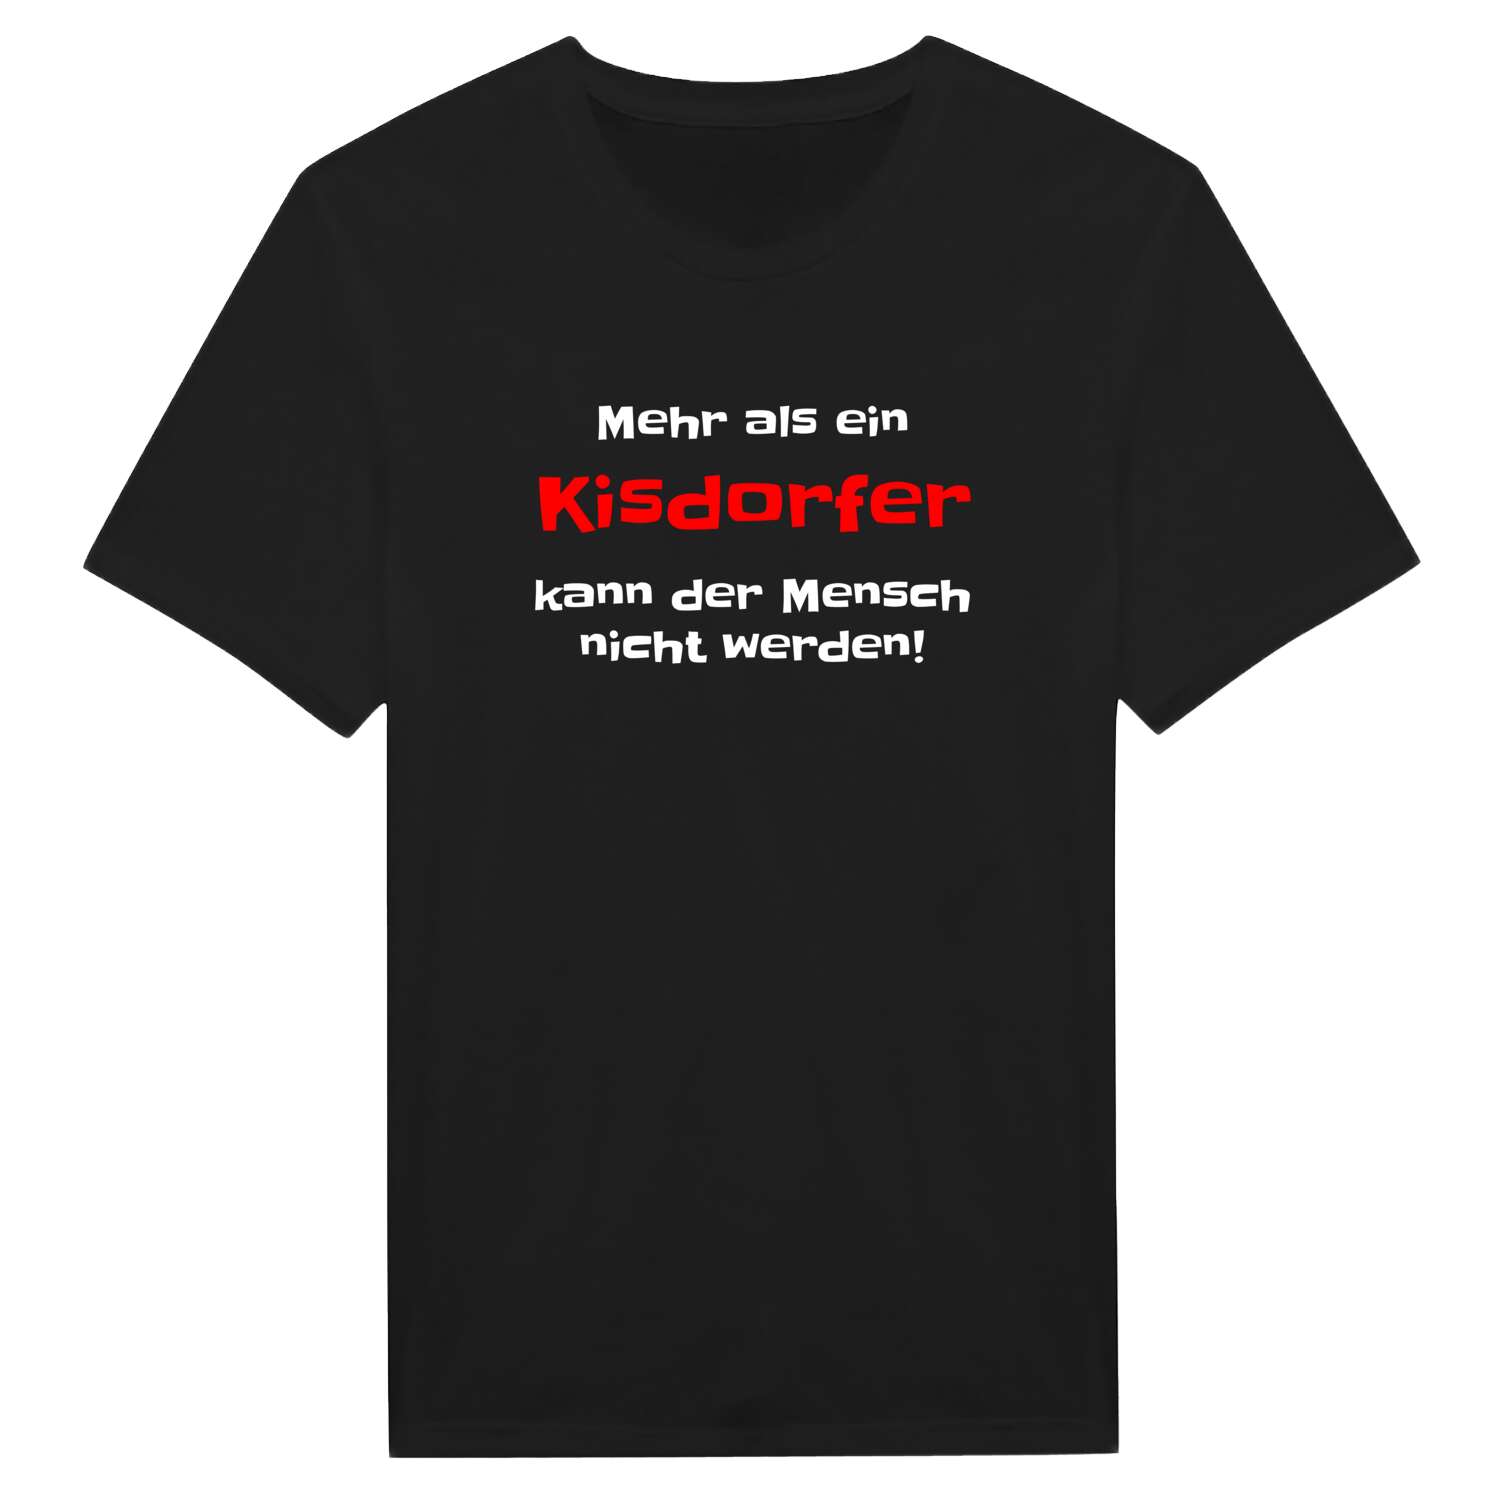 Kisdorf T-Shirt »Mehr als ein«